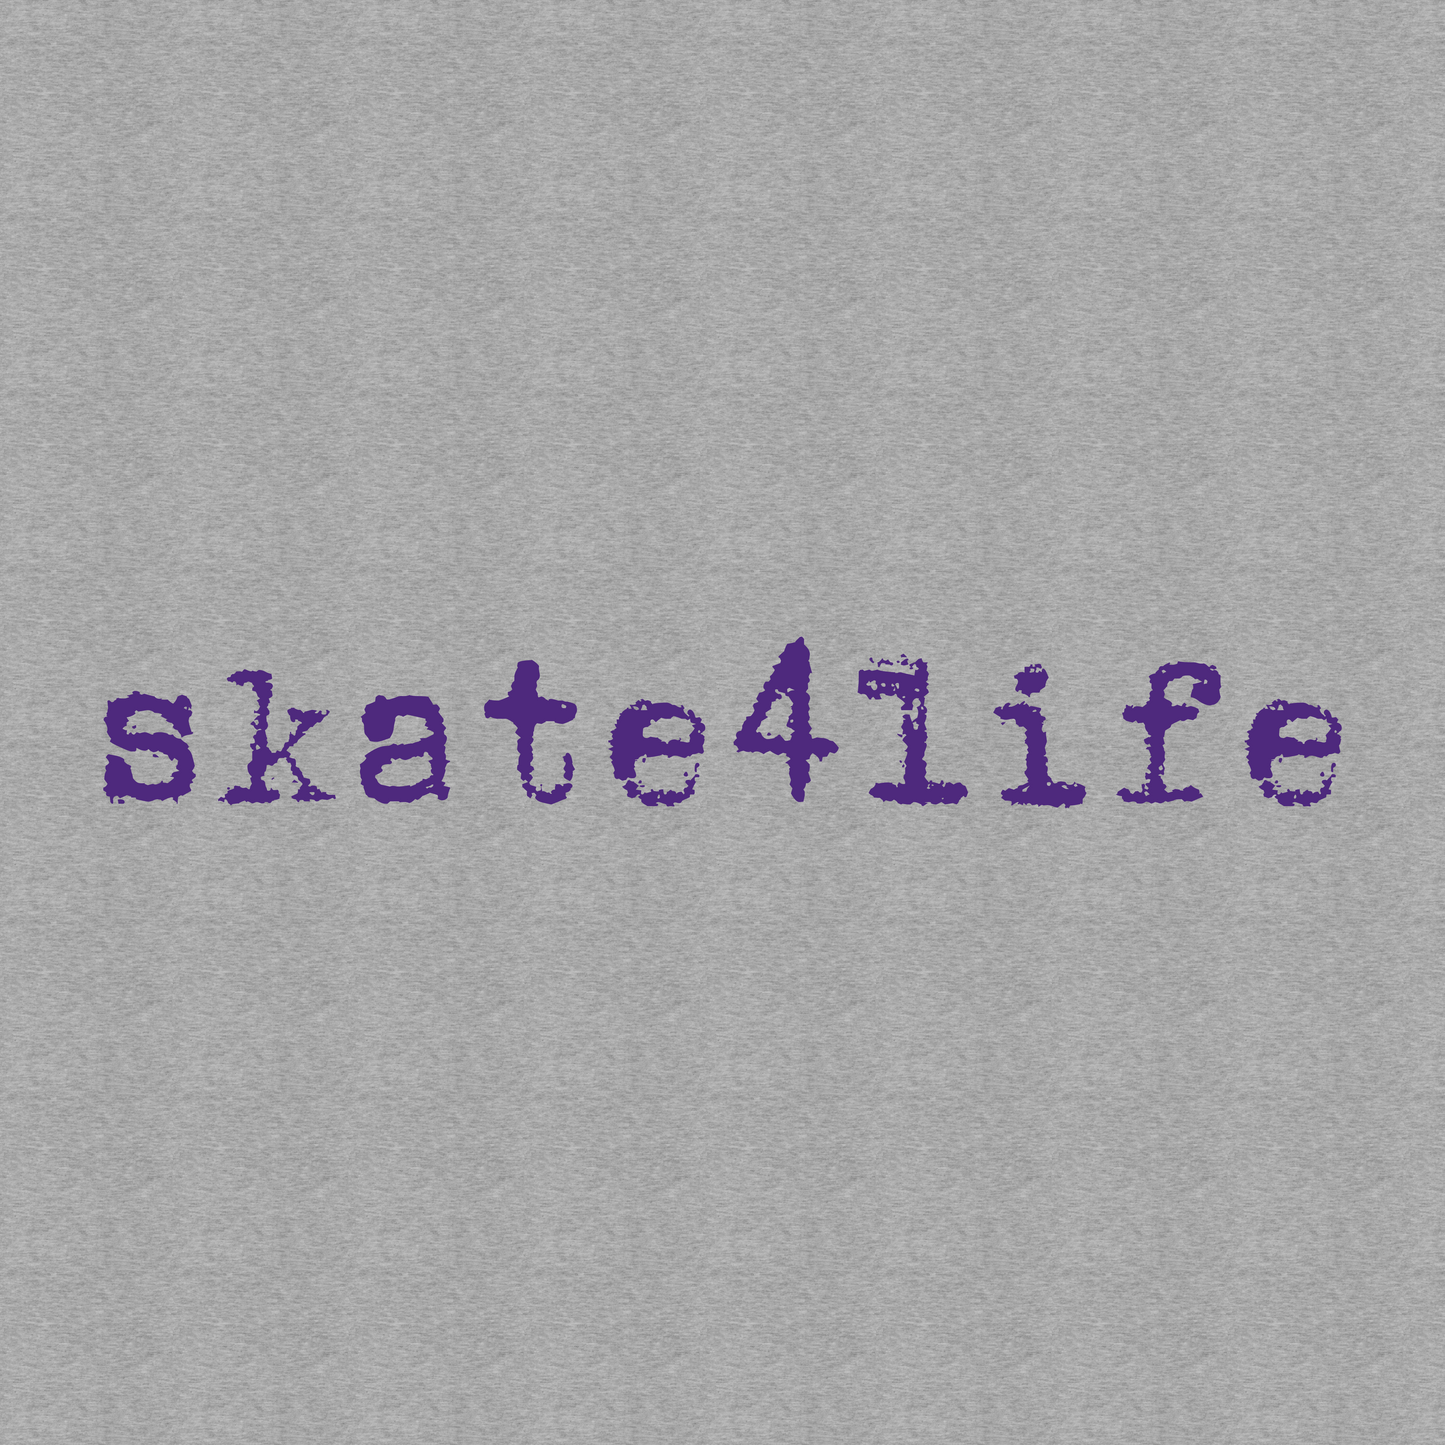 2020 skate4life sleeve design